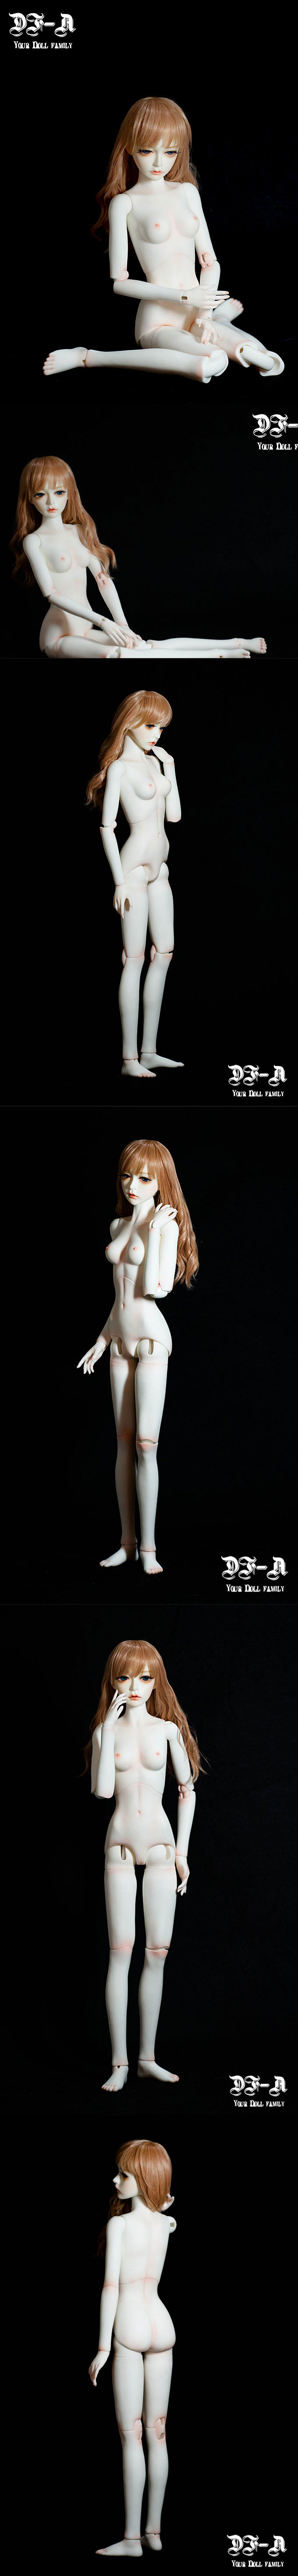 ボディ 60cm人形用 女 SDサイズ人形用(新) 